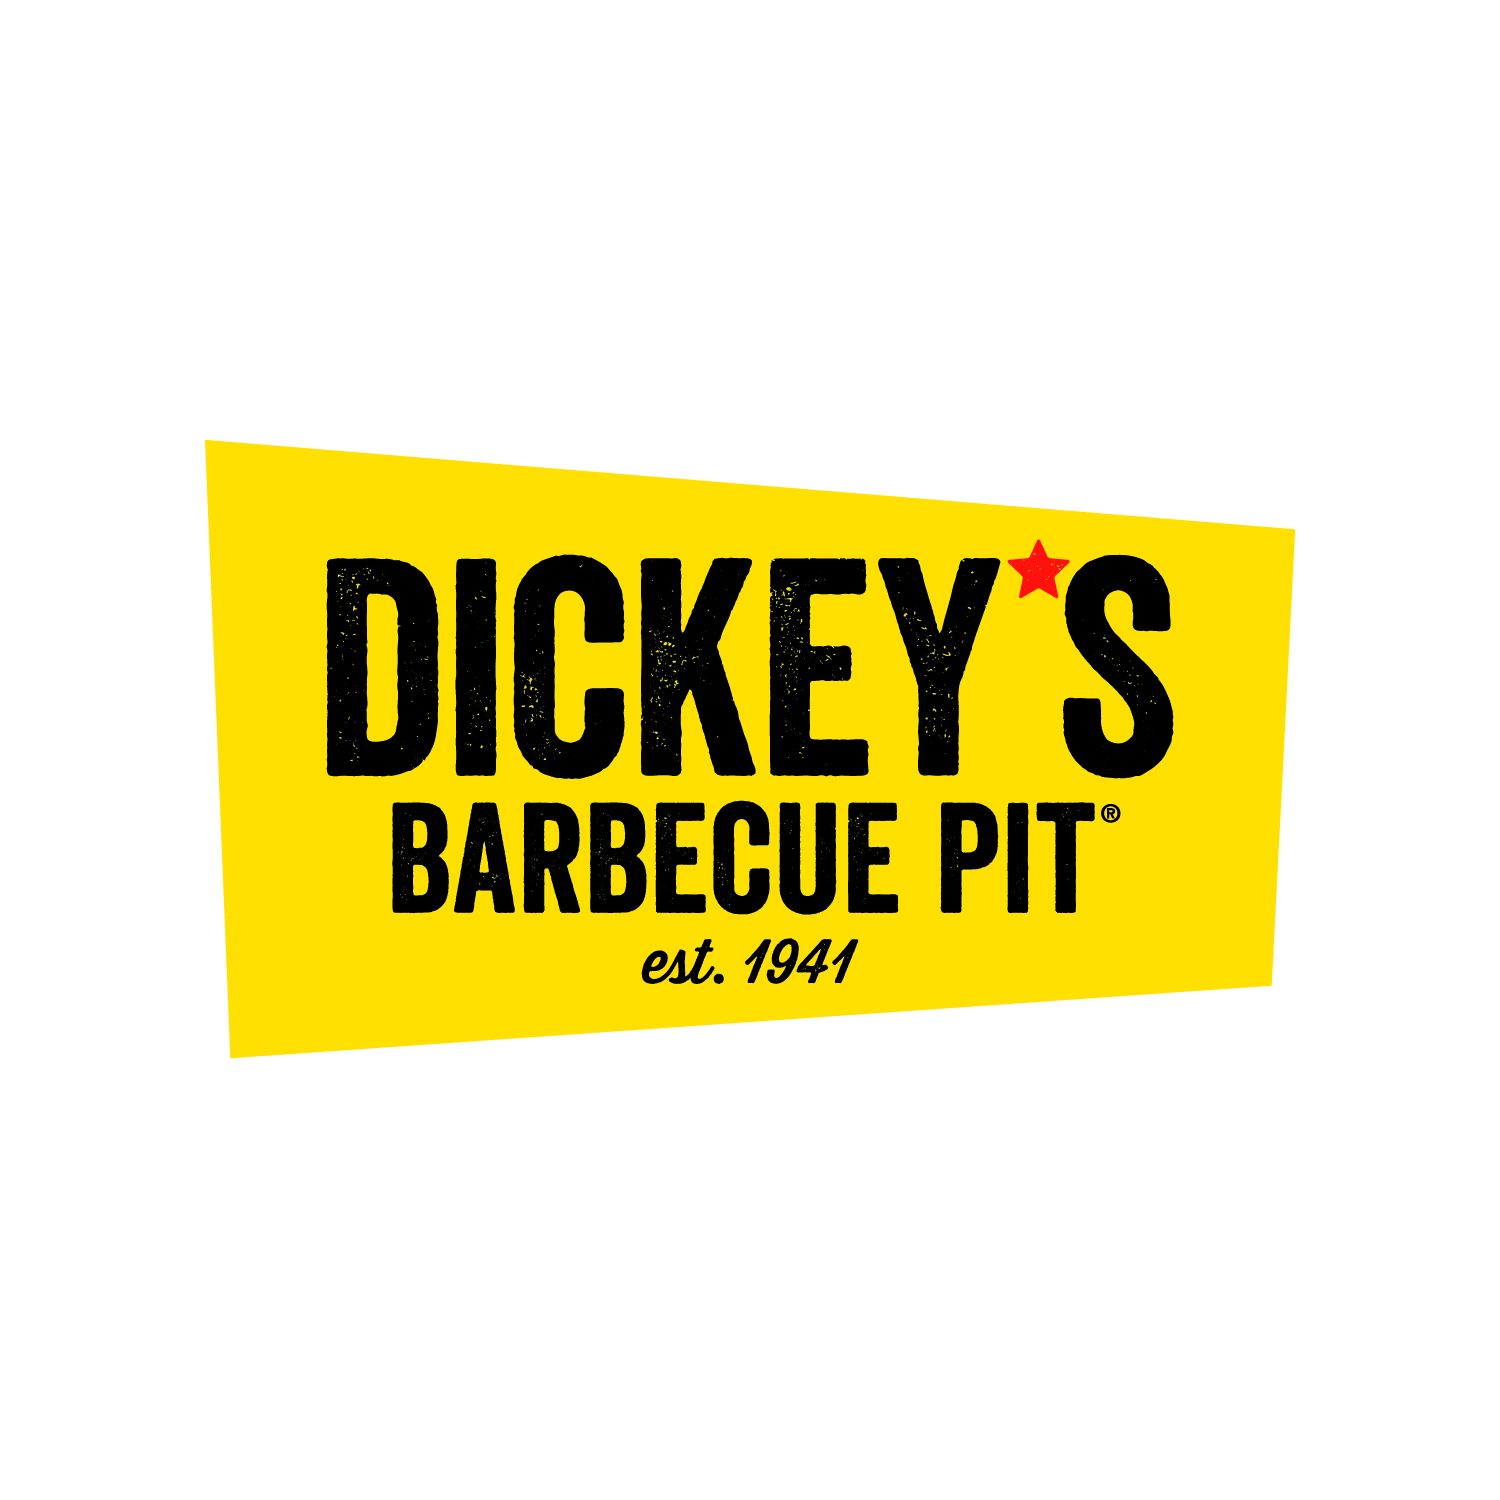 Dickey’s Barbecue Pi